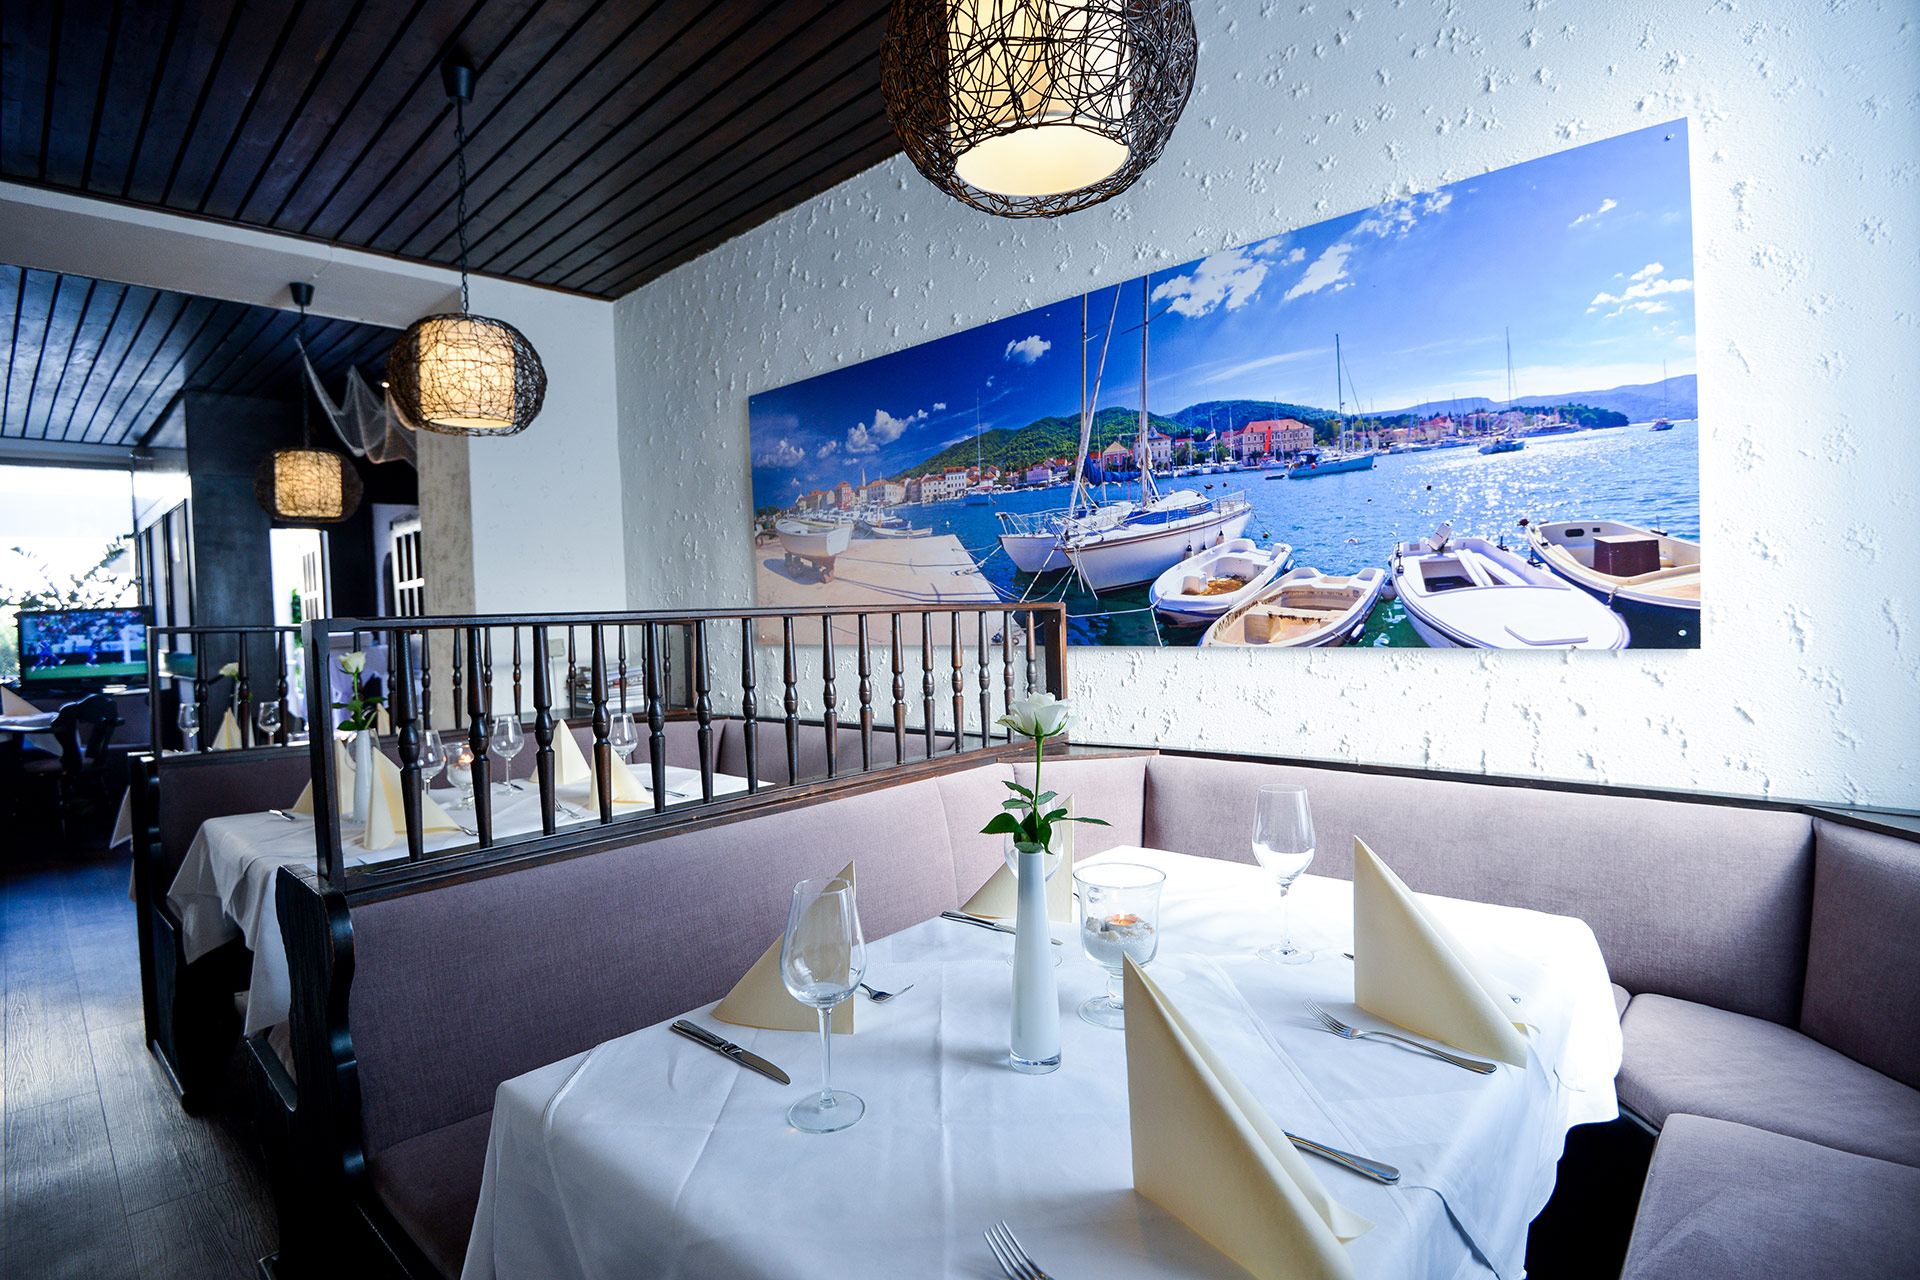 Sitzecke im Restaurant Mauritius in Wiesbaden